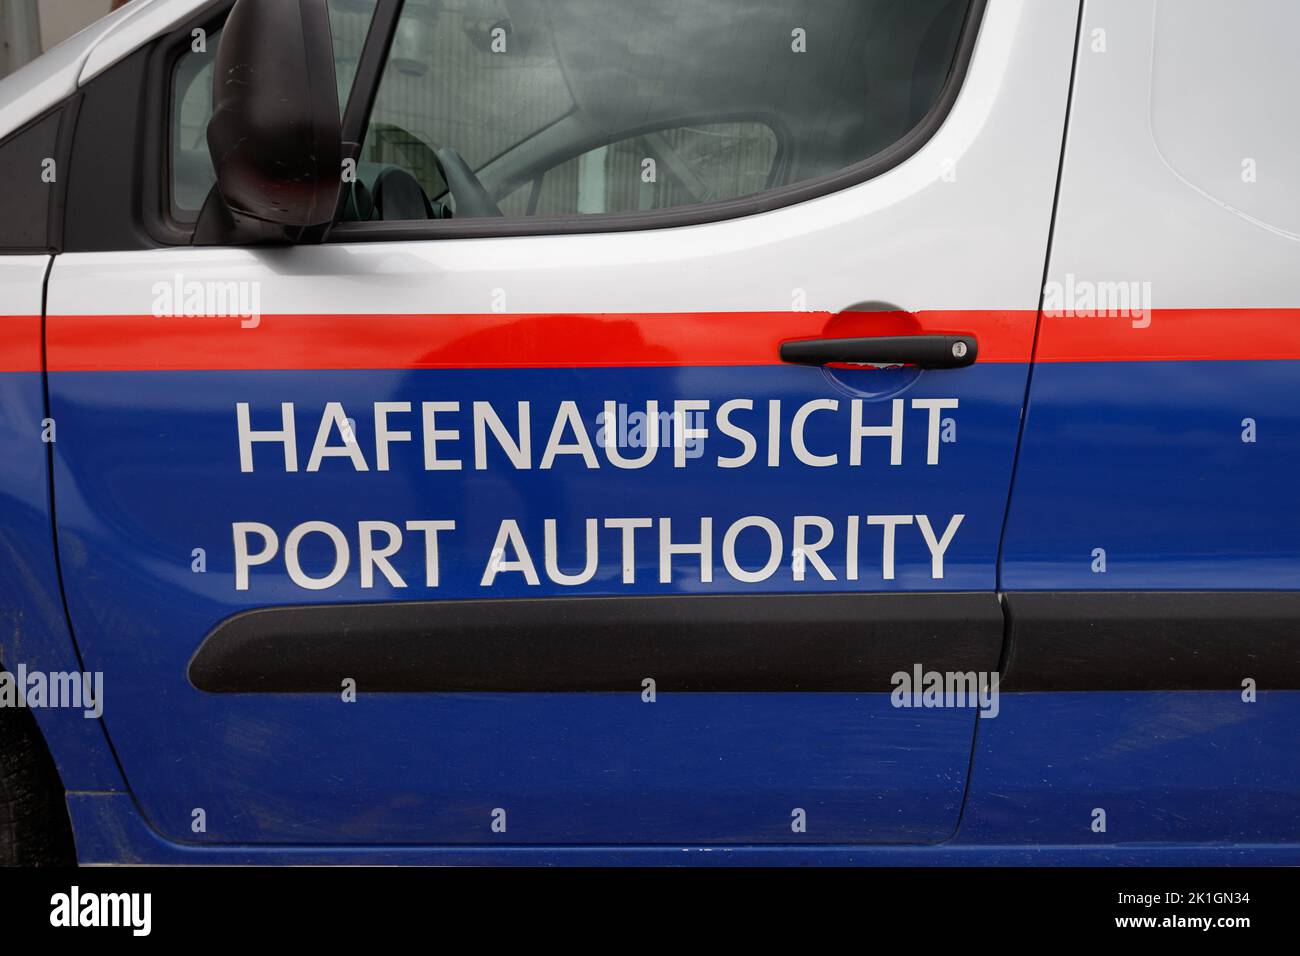 Coche de la autoridad portuaria del puerto de nuremberg, alemania. Traducción de la Autoridad Portuaria: Hafenaufsicht. Foto de stock